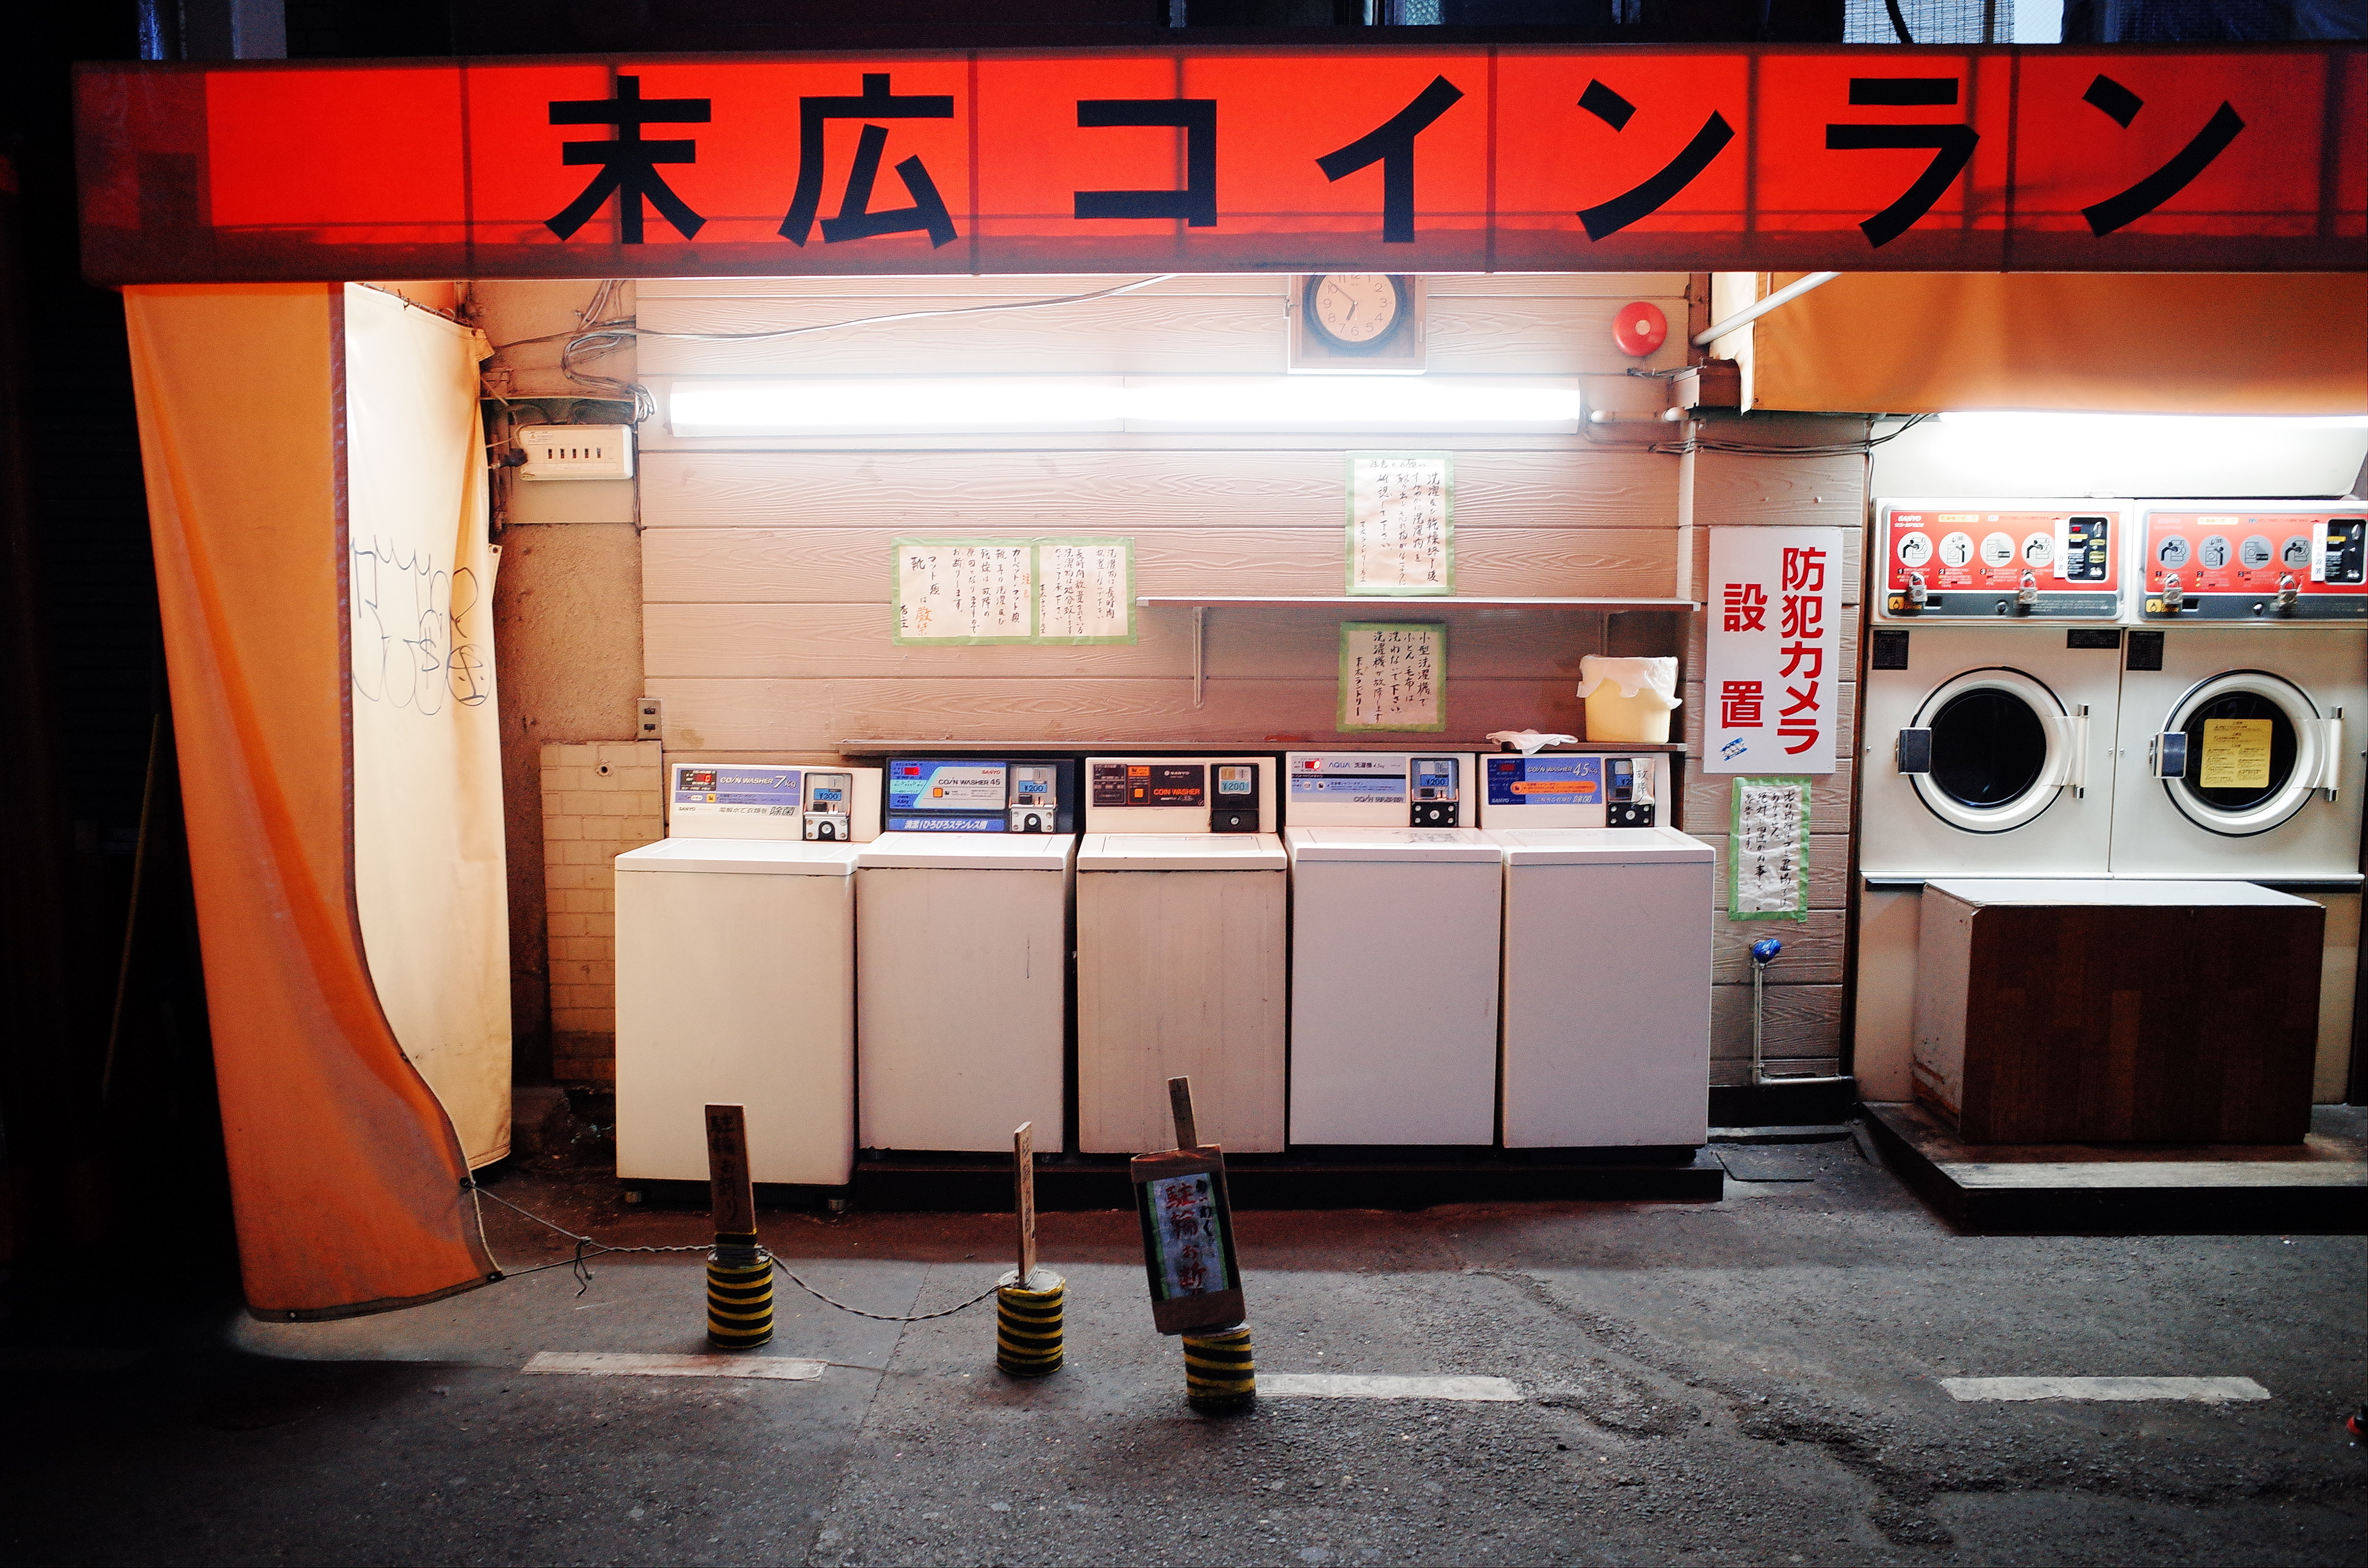 Laundry machines urban landscape. Osaka, 2018